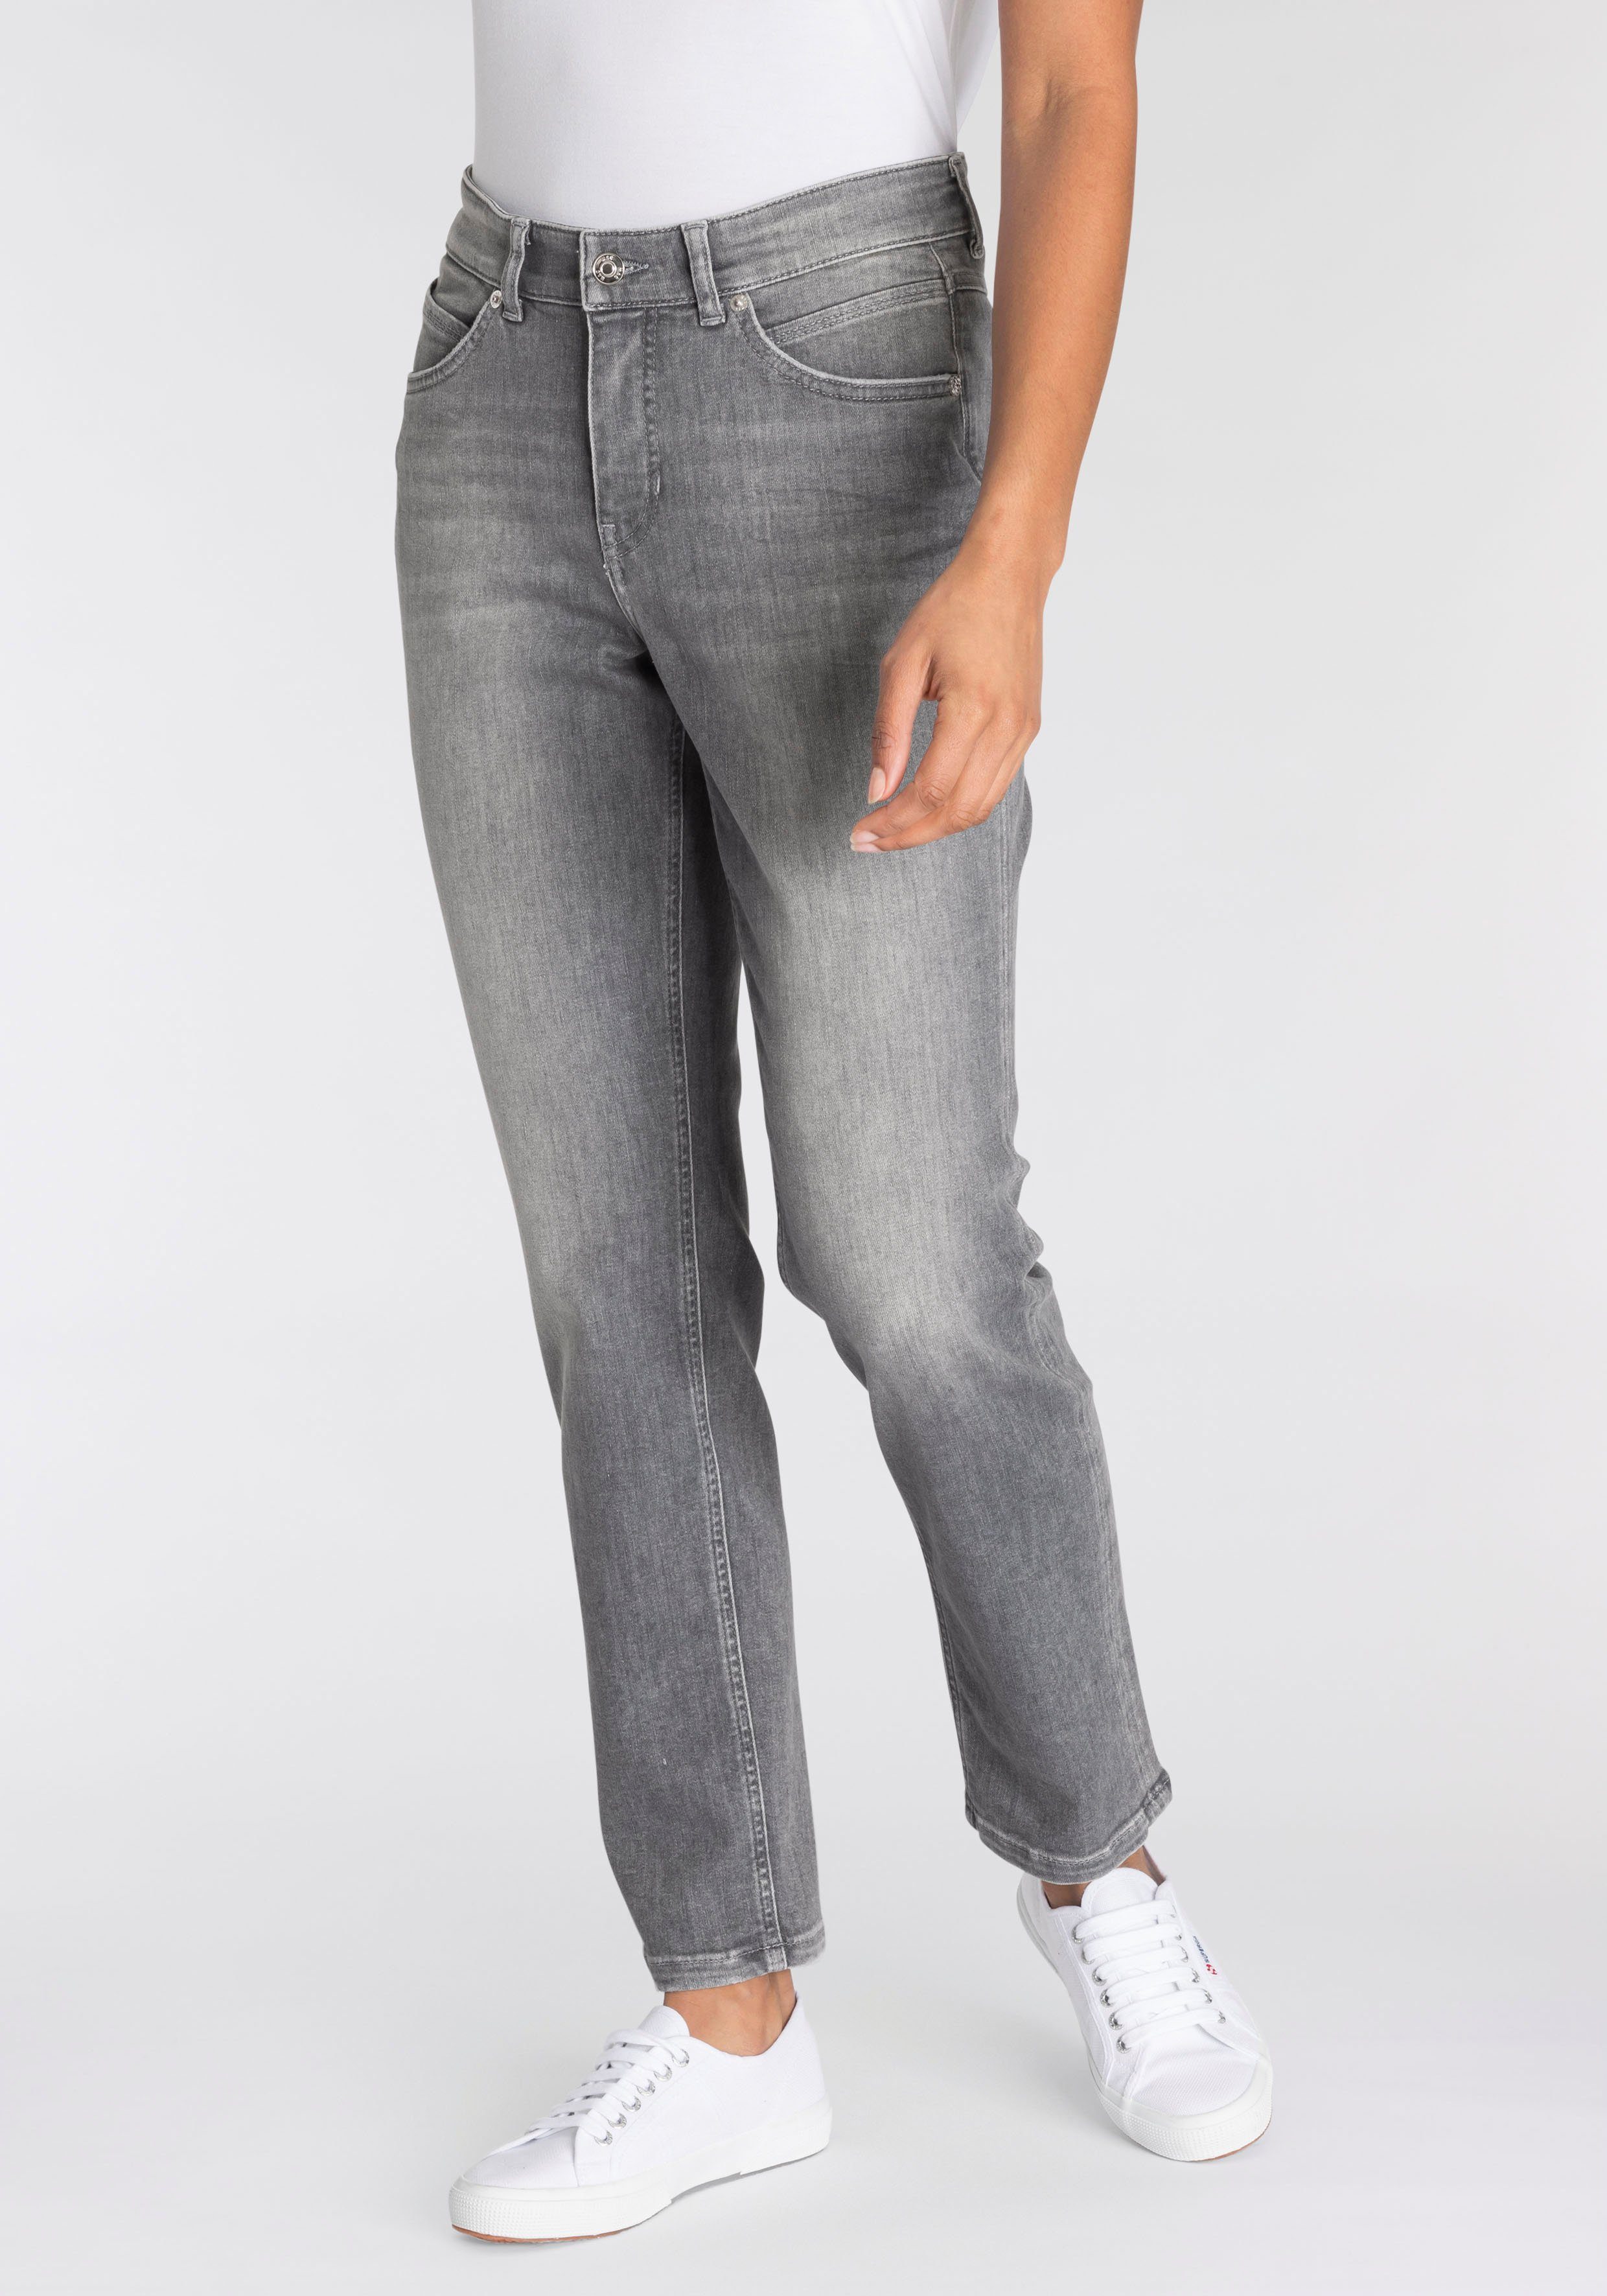 Damen Straight Jeans online kaufen » Gerade Jeans | OTTO